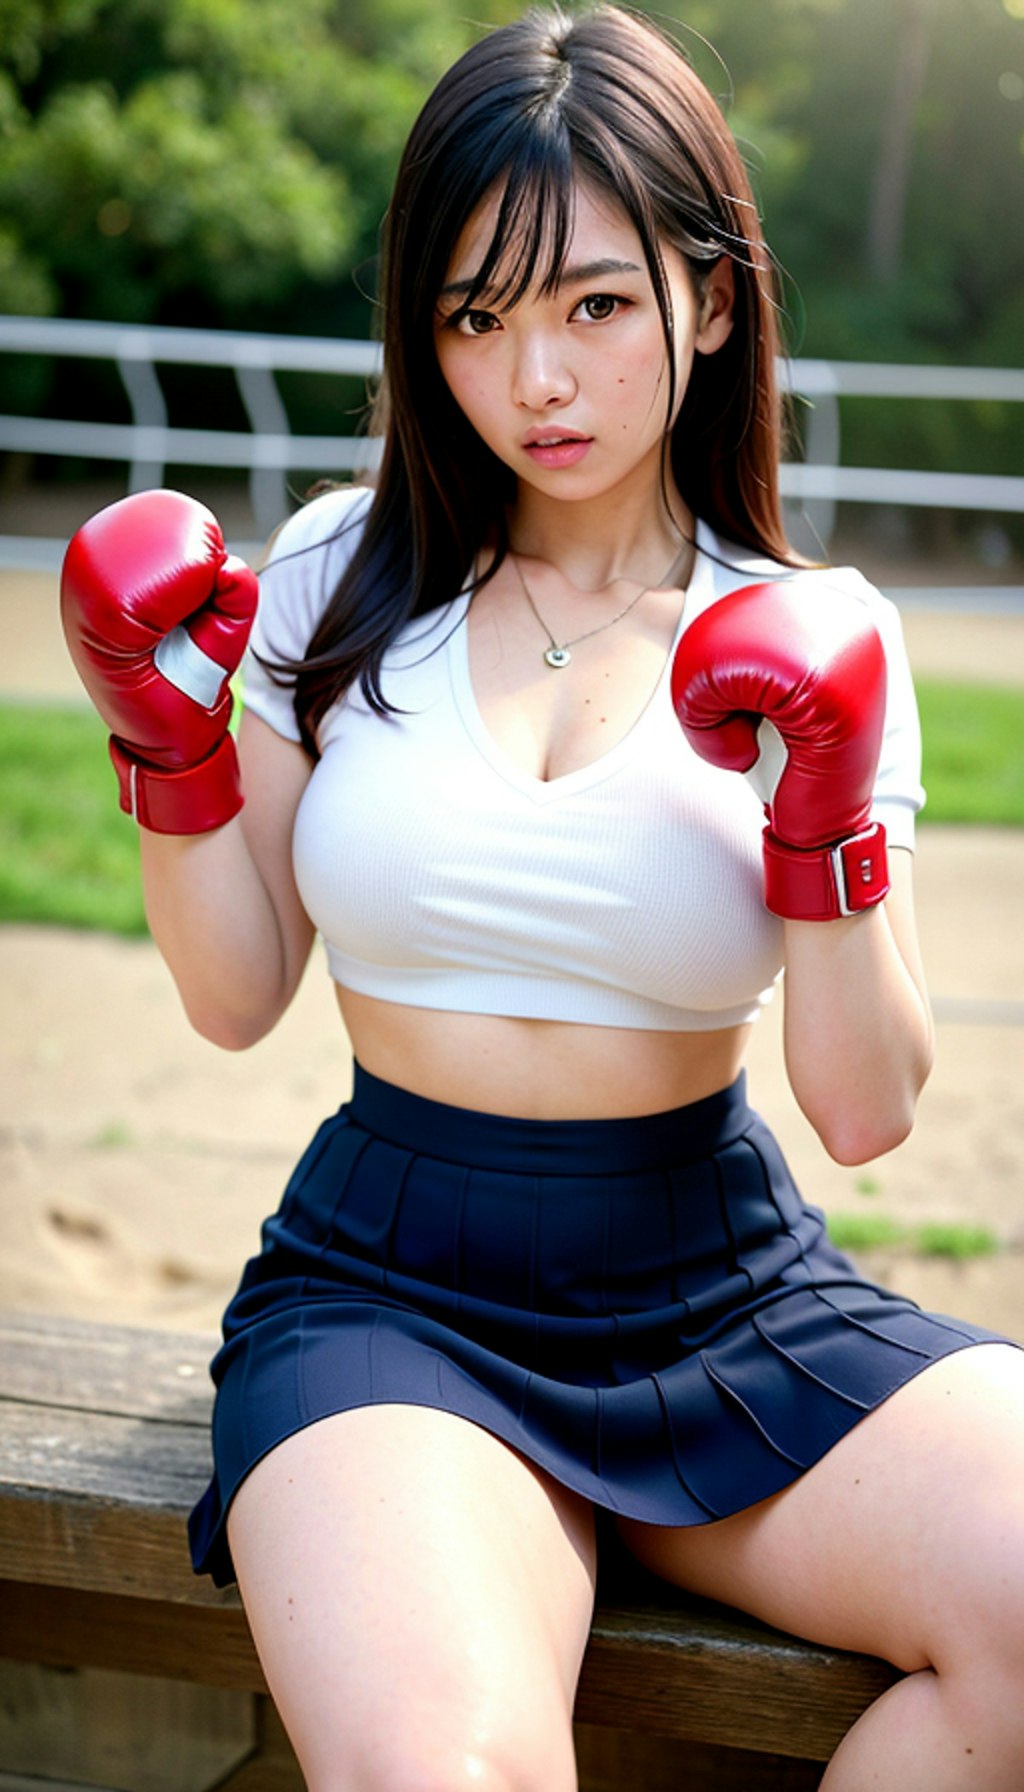 ボクシング白赤スカート1456-